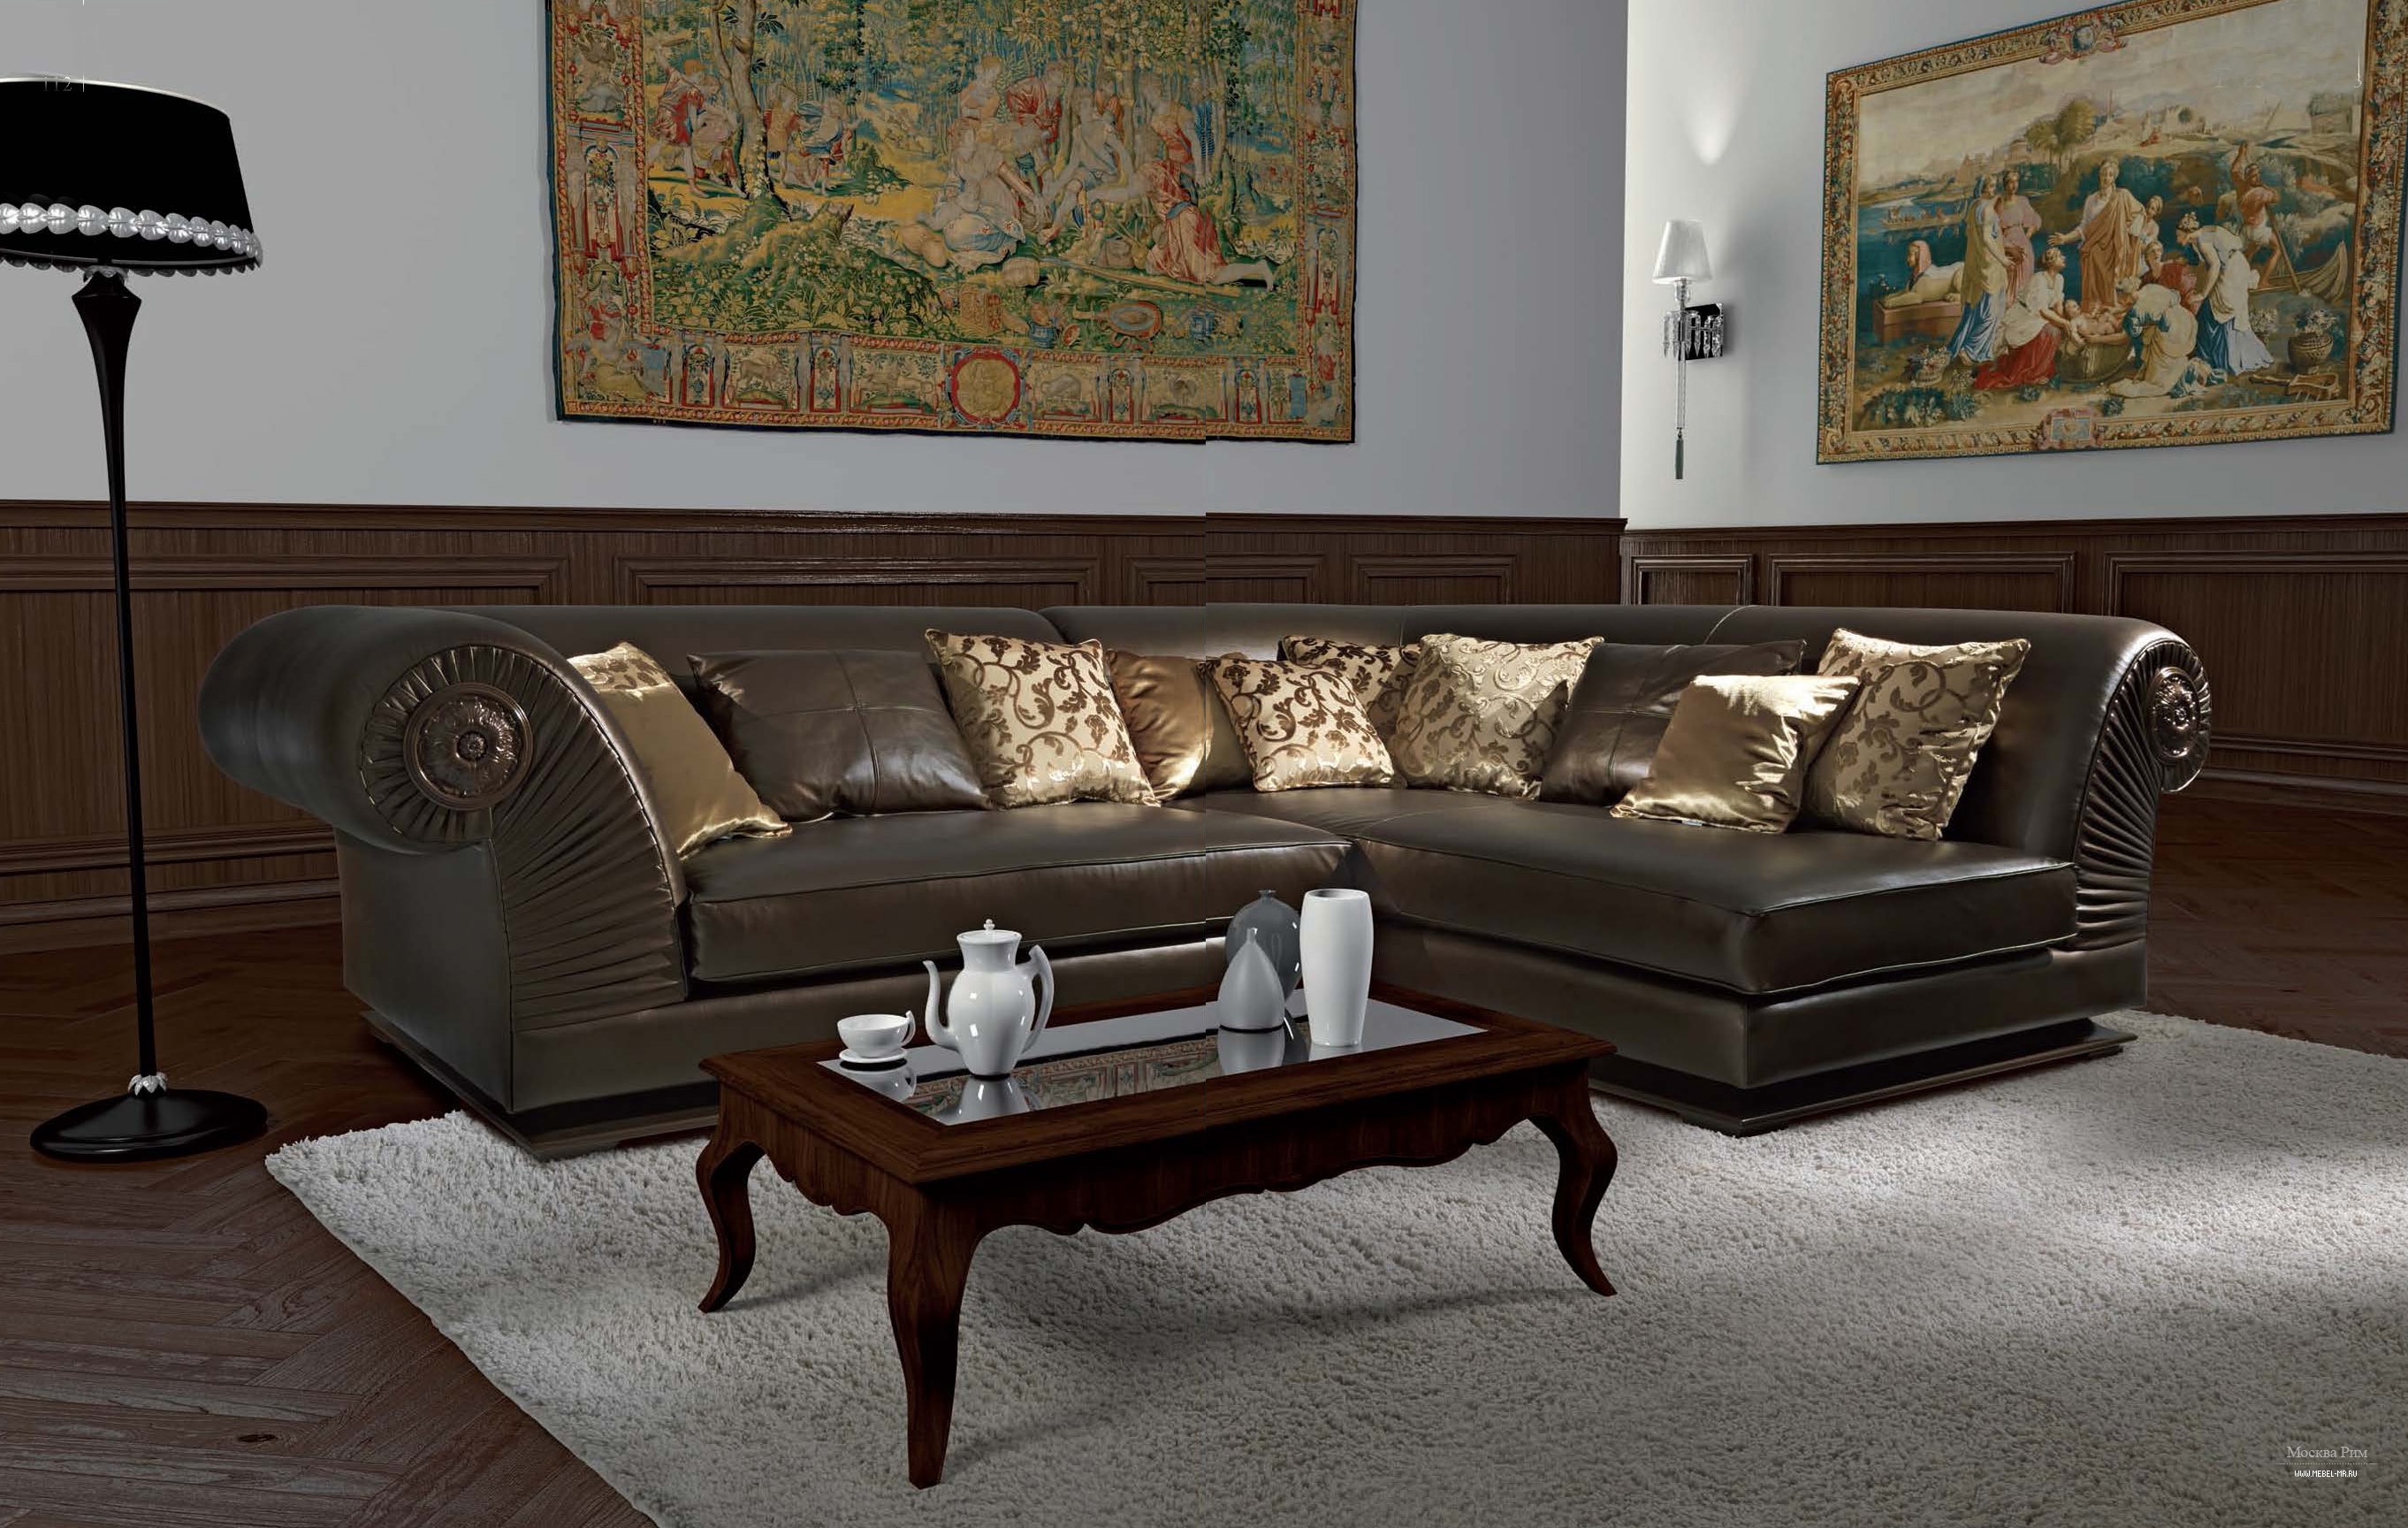 Итальянские диваны и кресла - удовольствие и мягкий комфорт